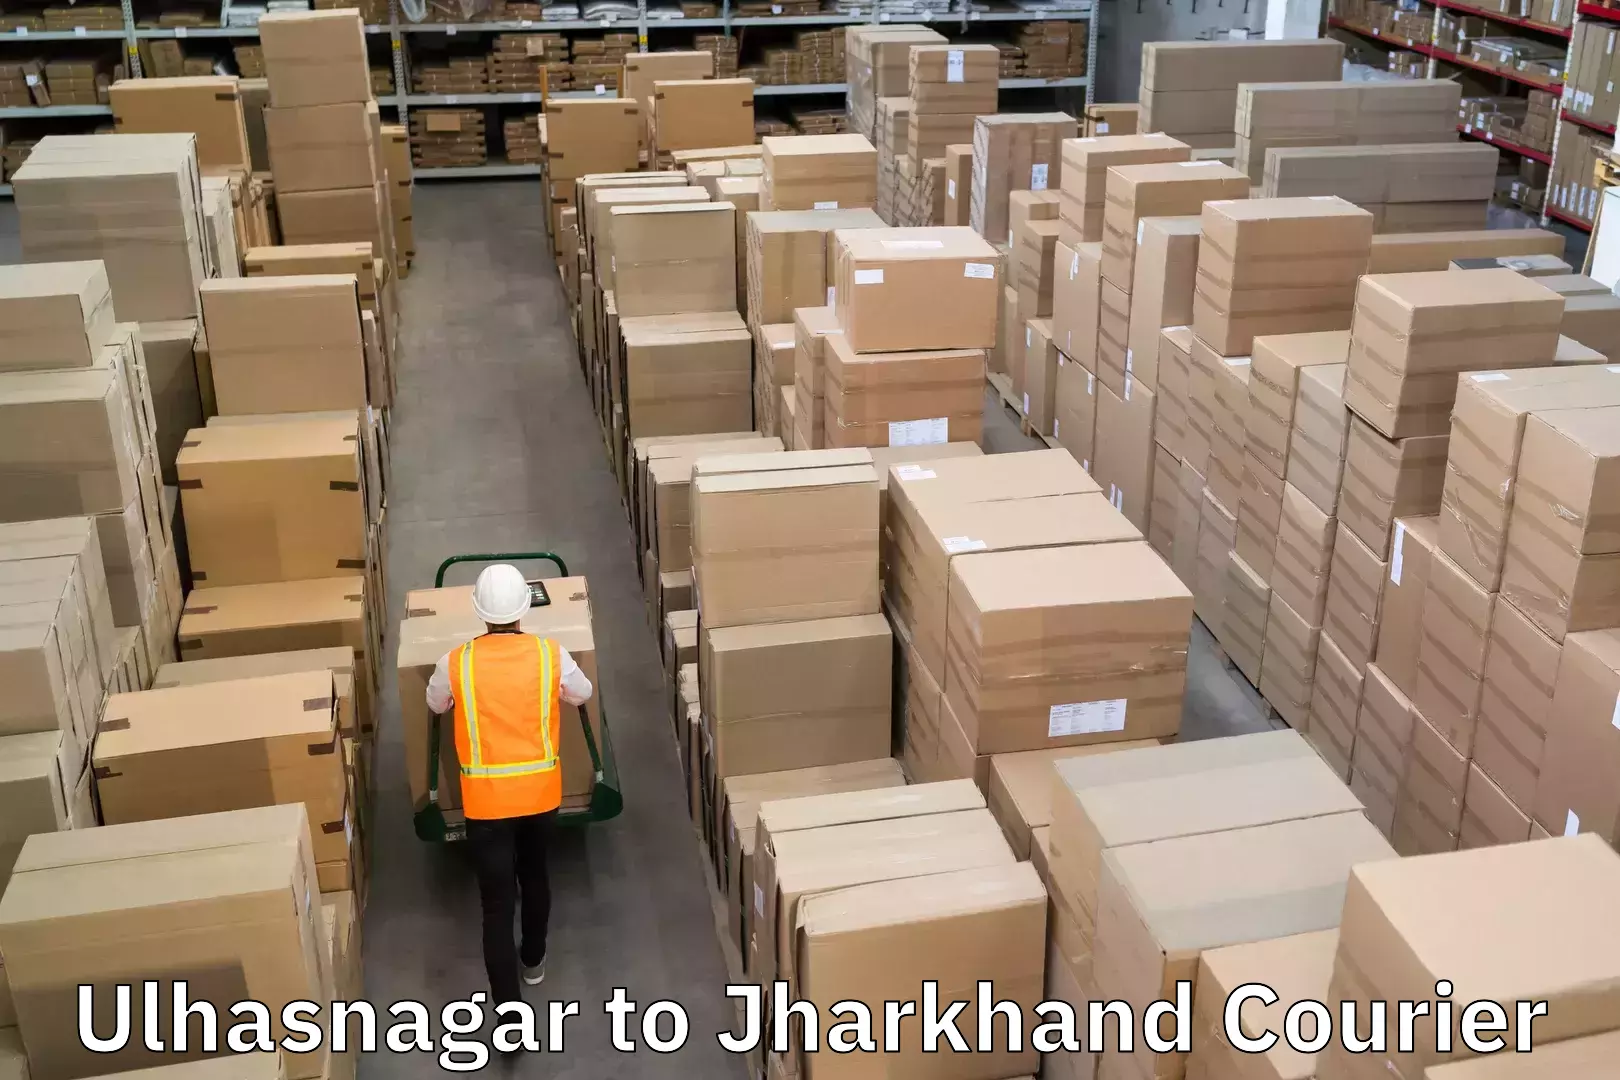 Weekend courier service Ulhasnagar to Jharkhand